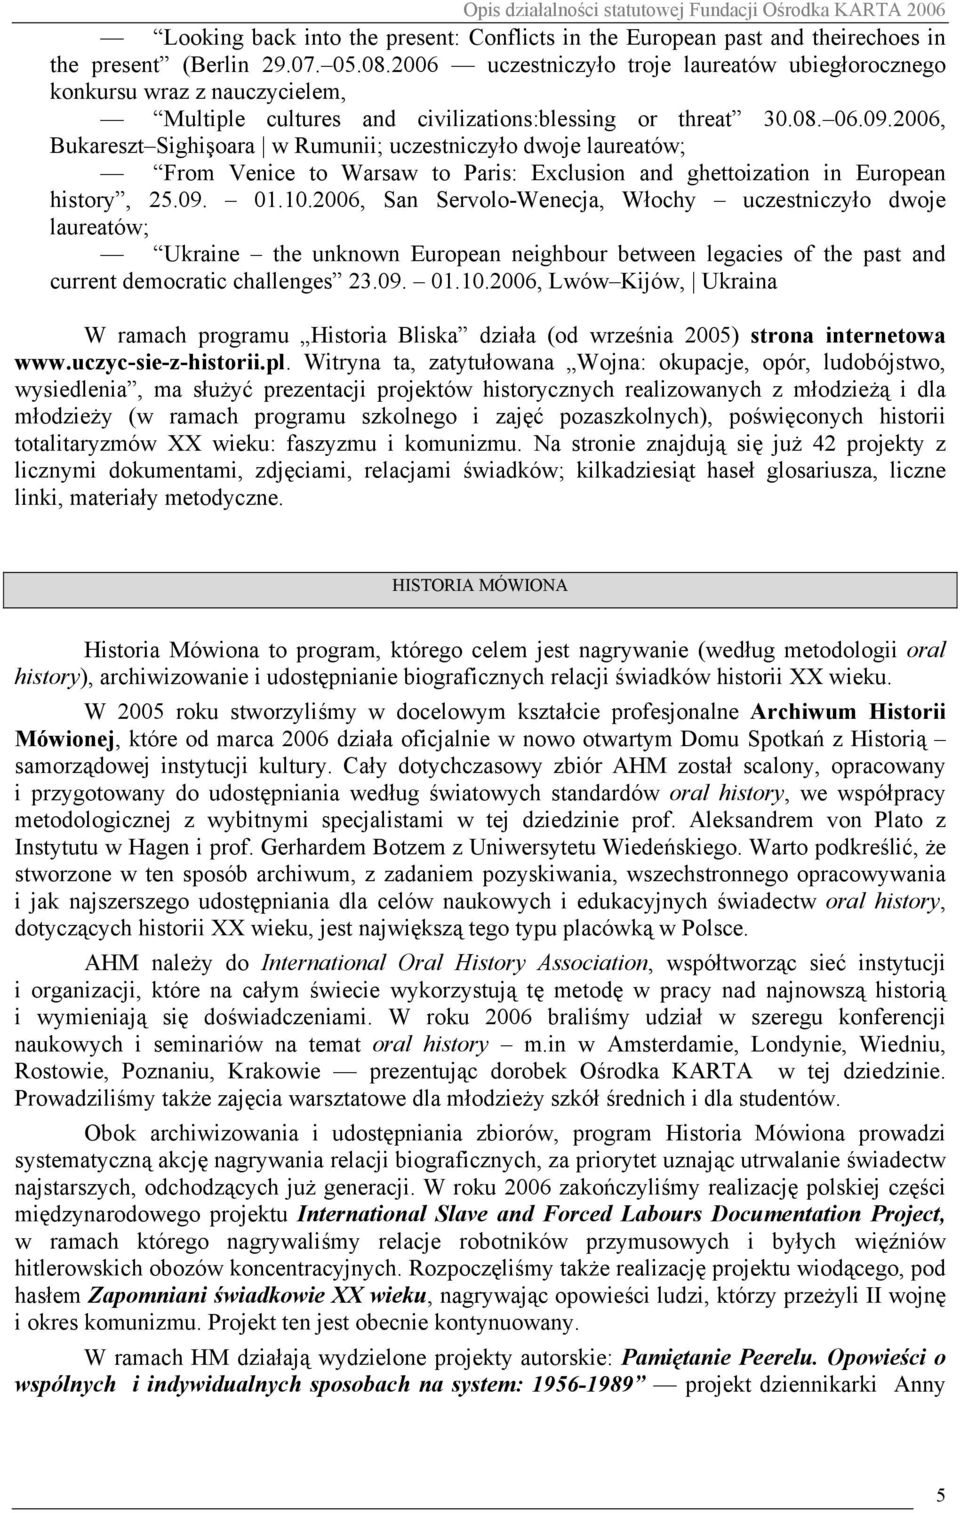 2006, Bukareszt Sighişoara w Rumunii; uczestniczyło dwoje laureatów; From Venice to Warsaw to Paris: Exclusion and ghettoization in European history, 25.09. 01.10.